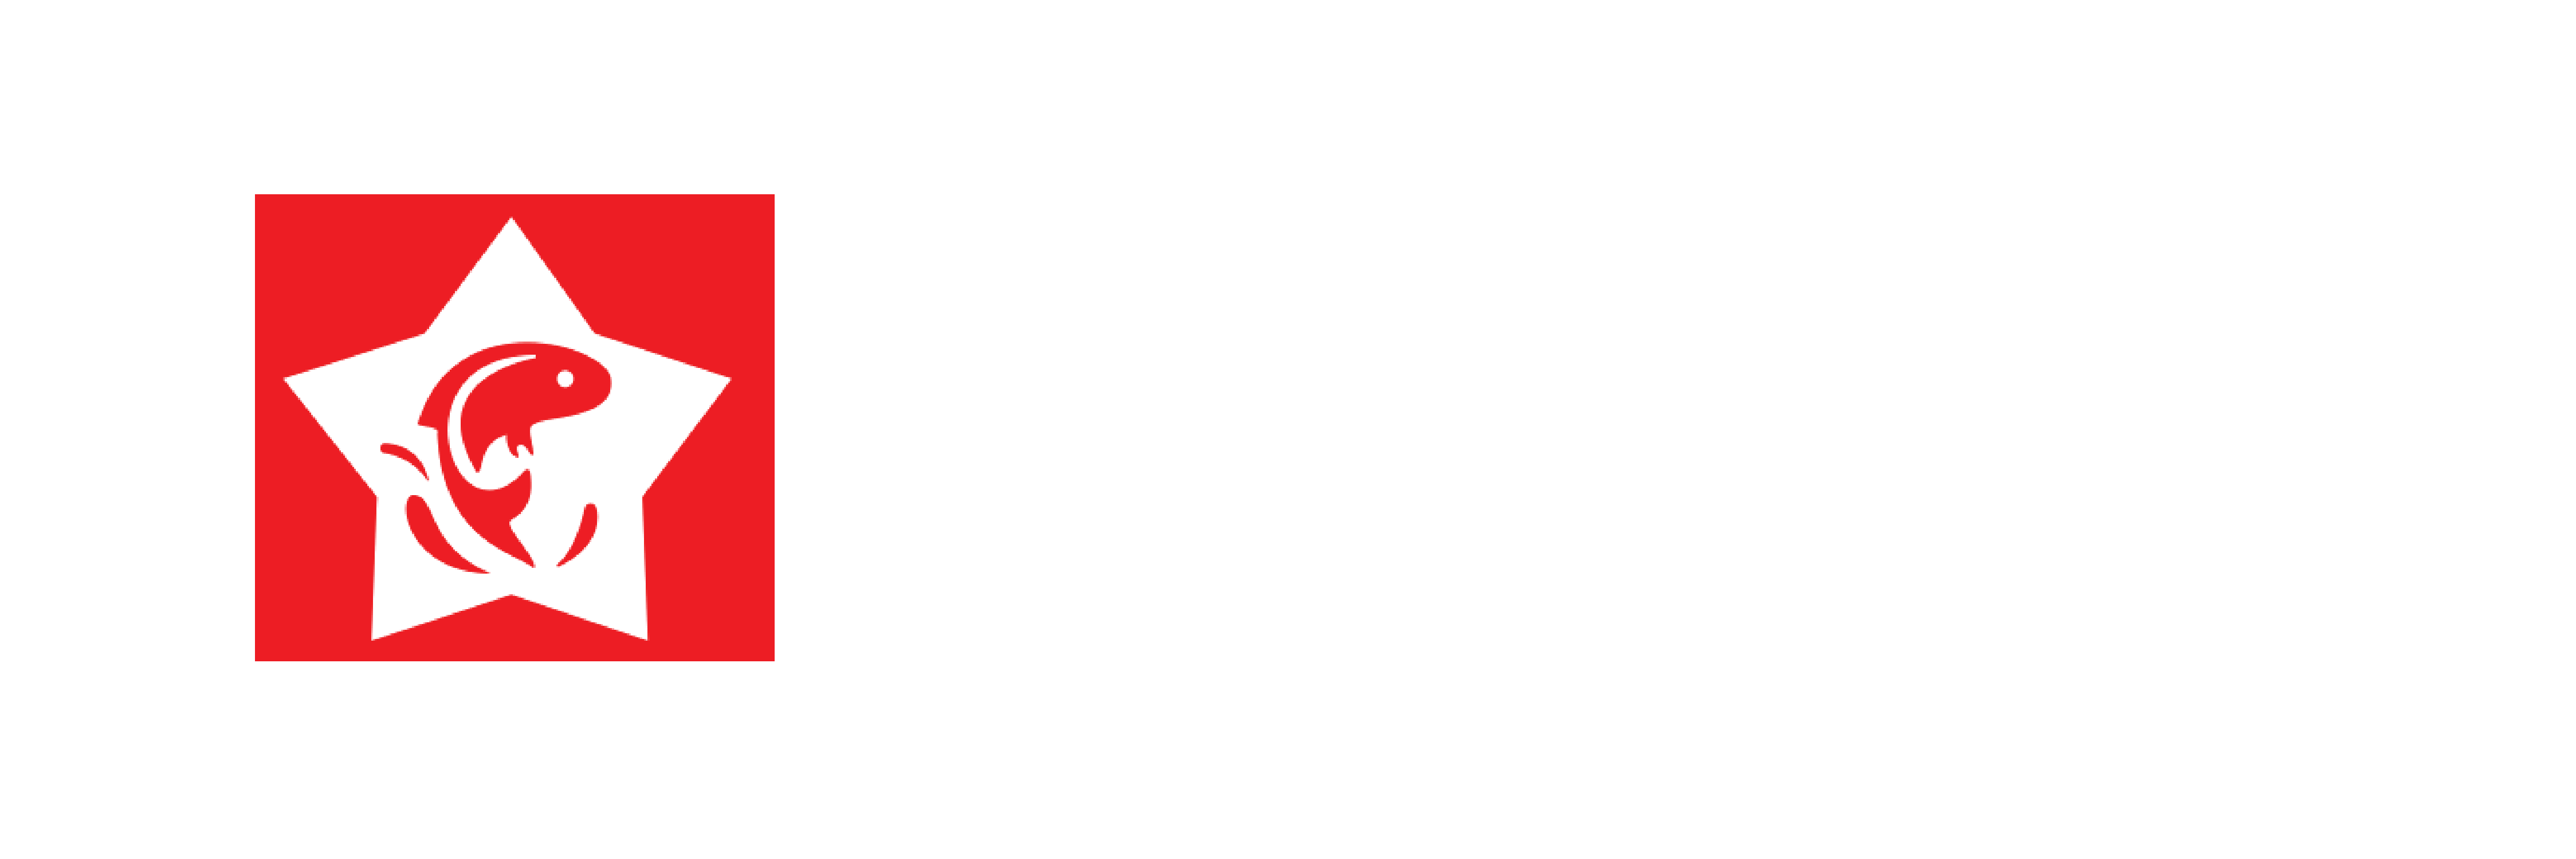 Akshaj Ventures